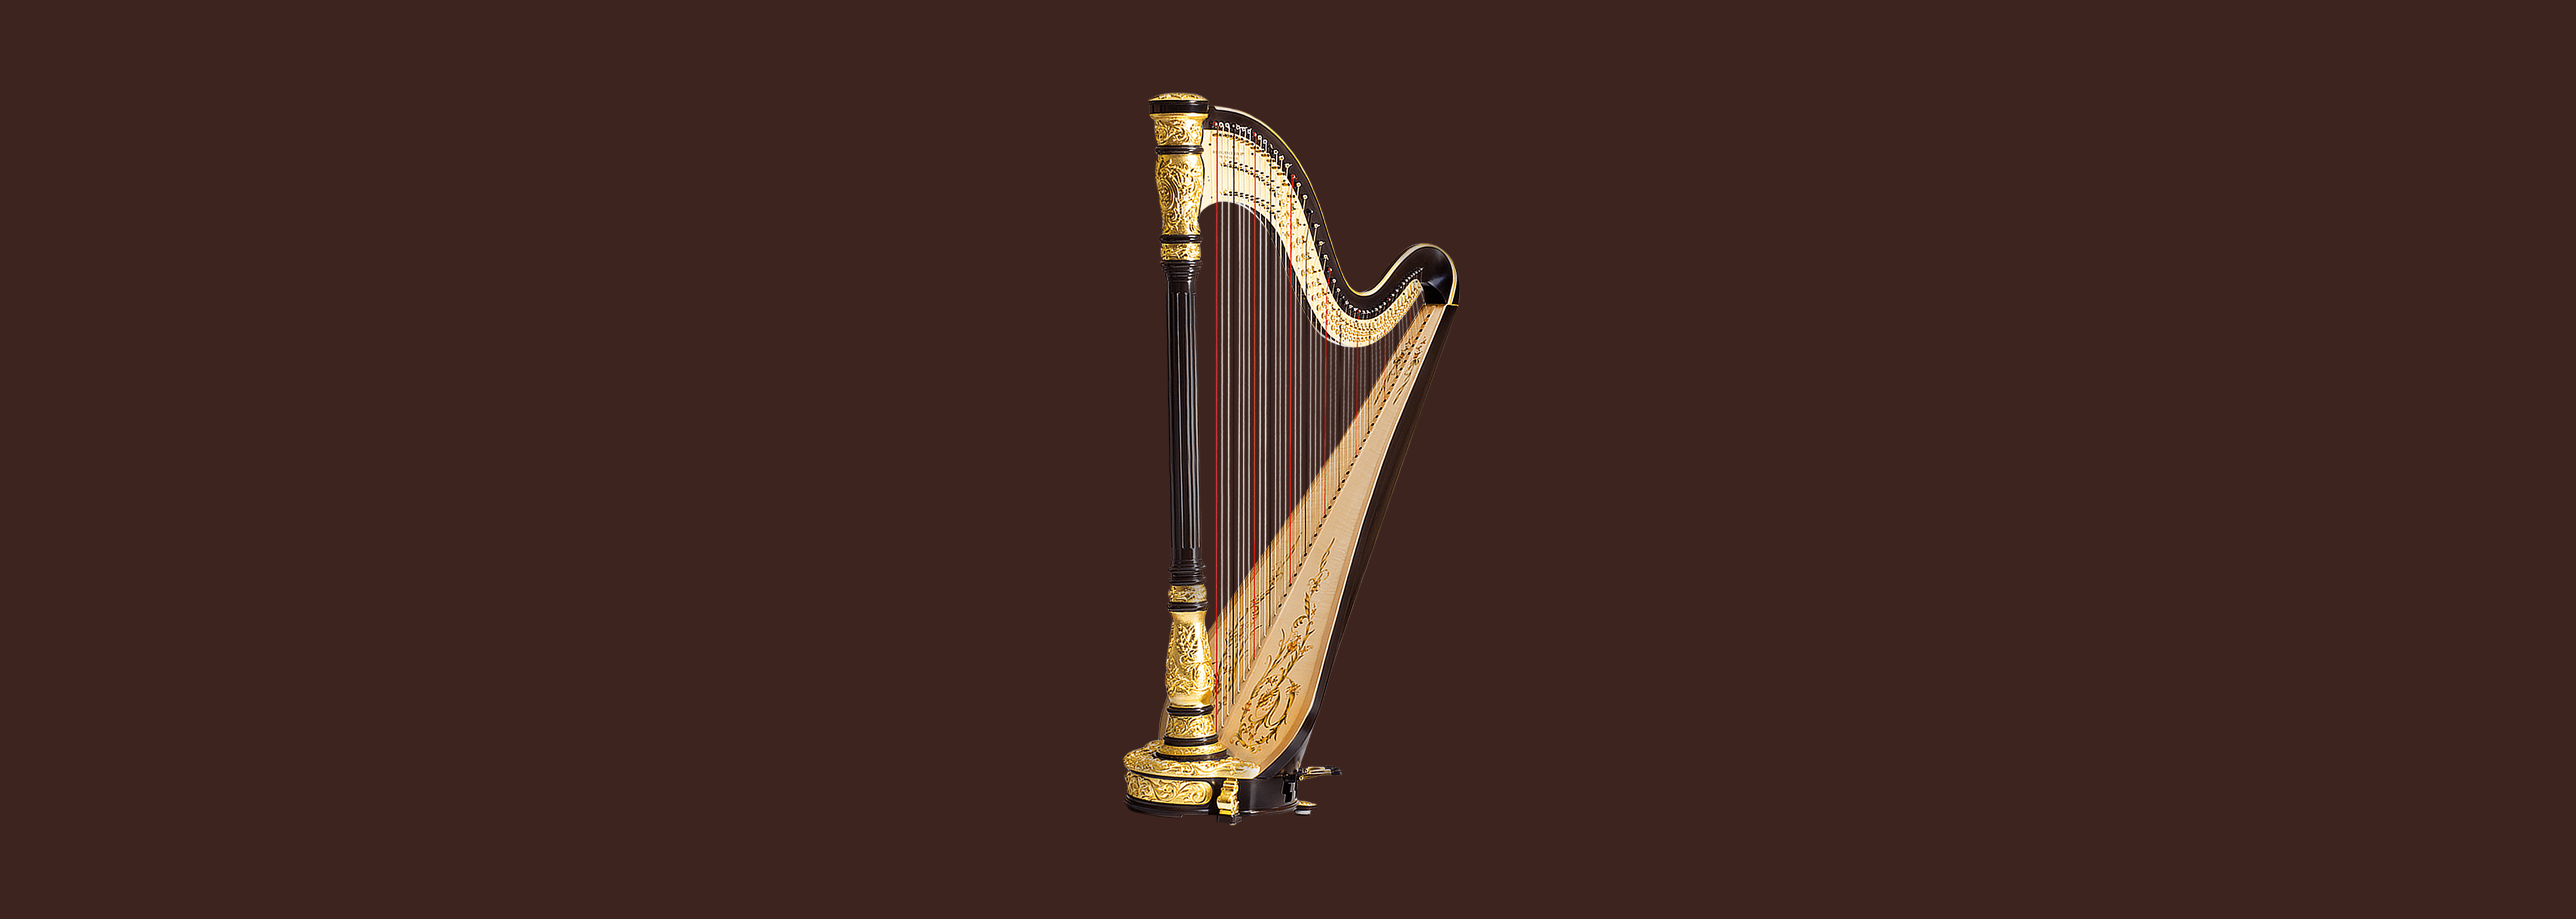 Centurion Harps 1